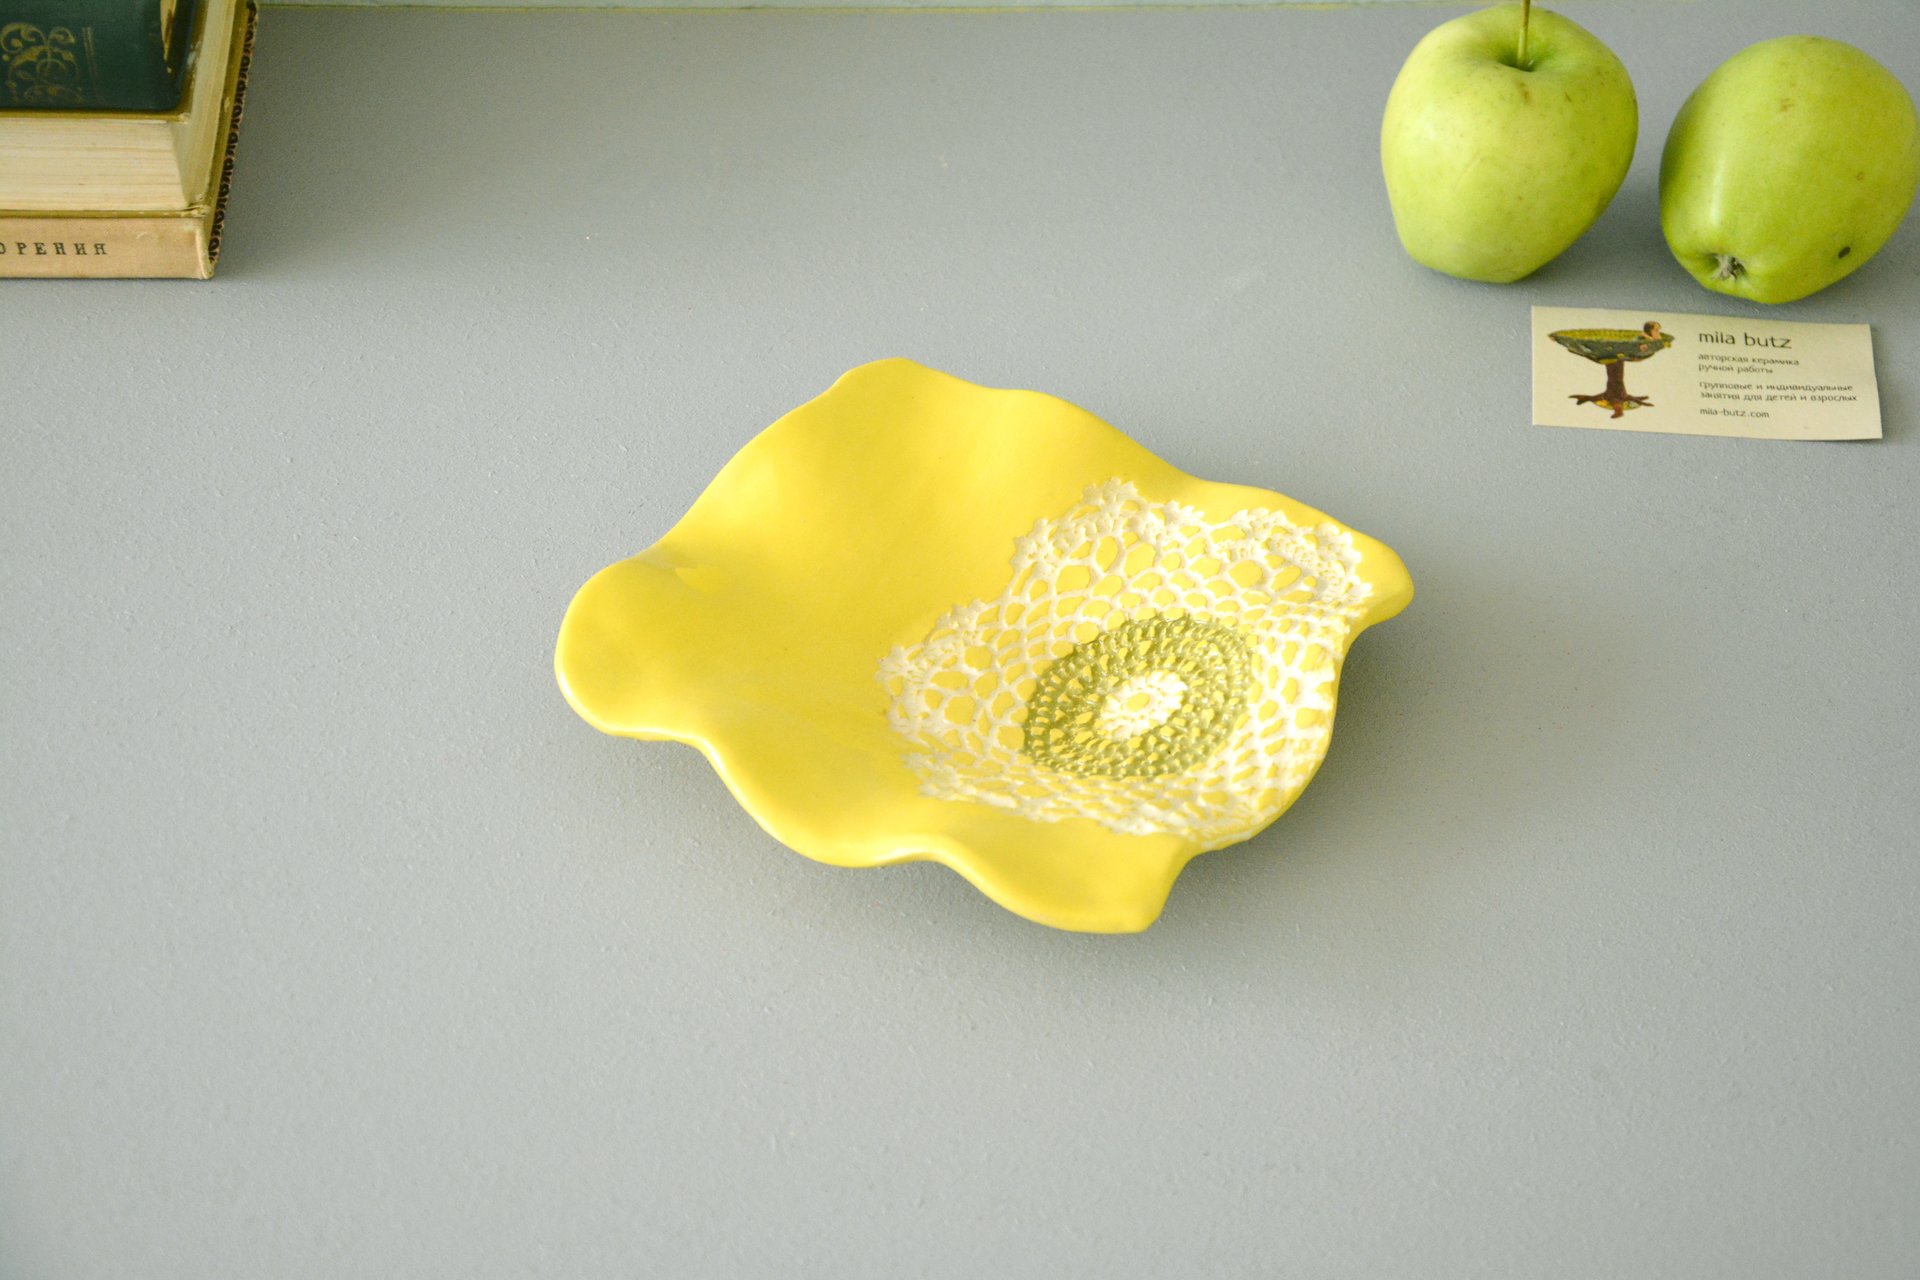 Керамическая тарелка желтая квадратной формы, ширина*длина - 17*18 см, высота - 3,5 см, фото 2 из 4.